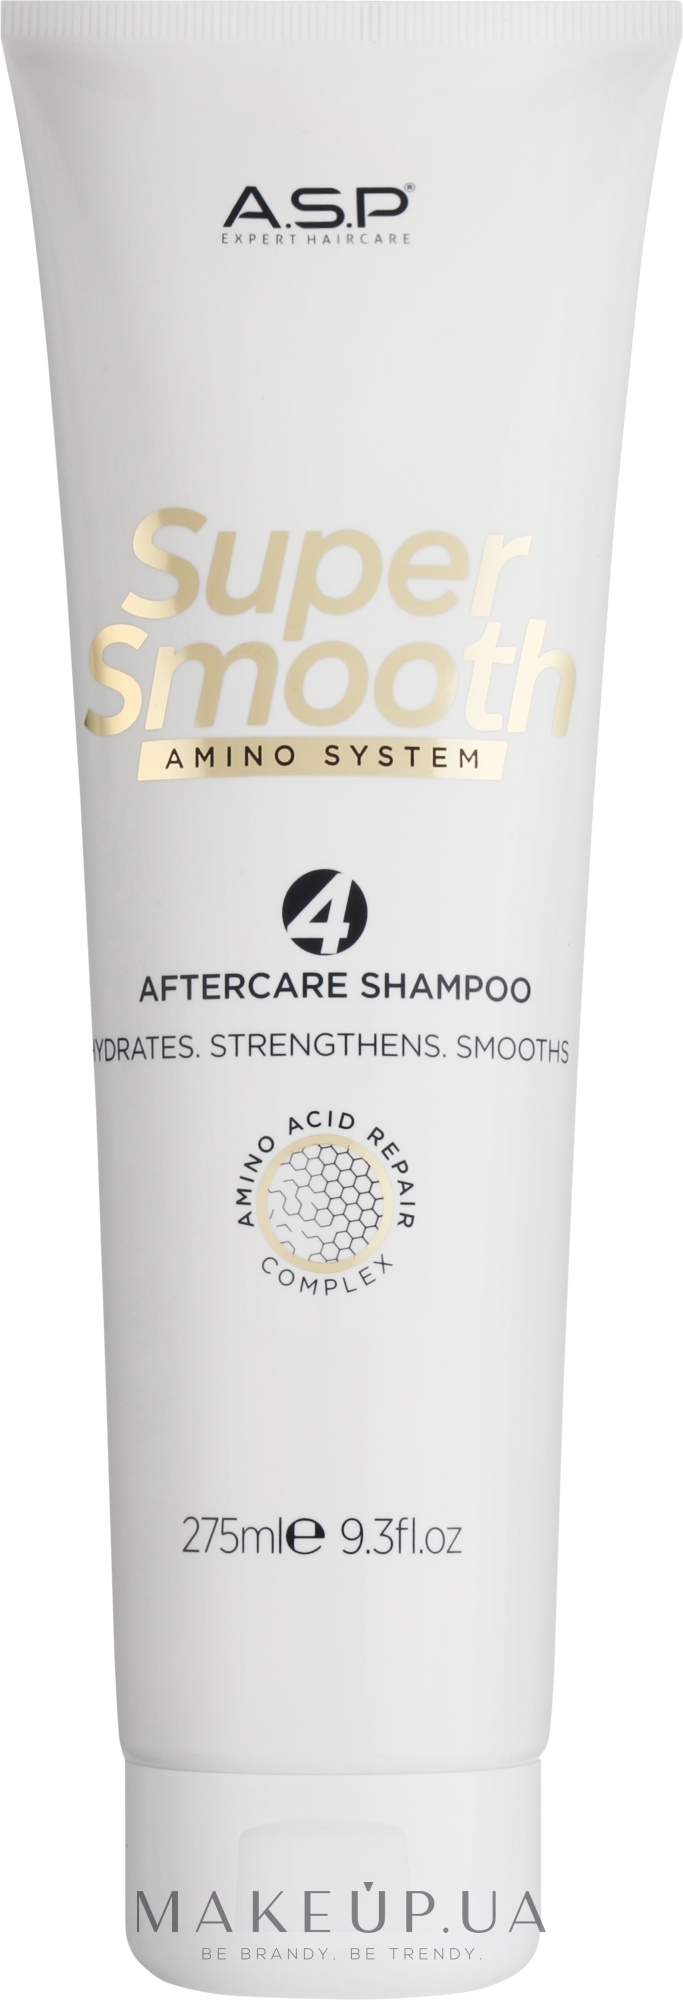 Восстанавливающий и укрепляющий шампунь для волос - ASP Super Smooth After Care Shampoo — фото 275ml